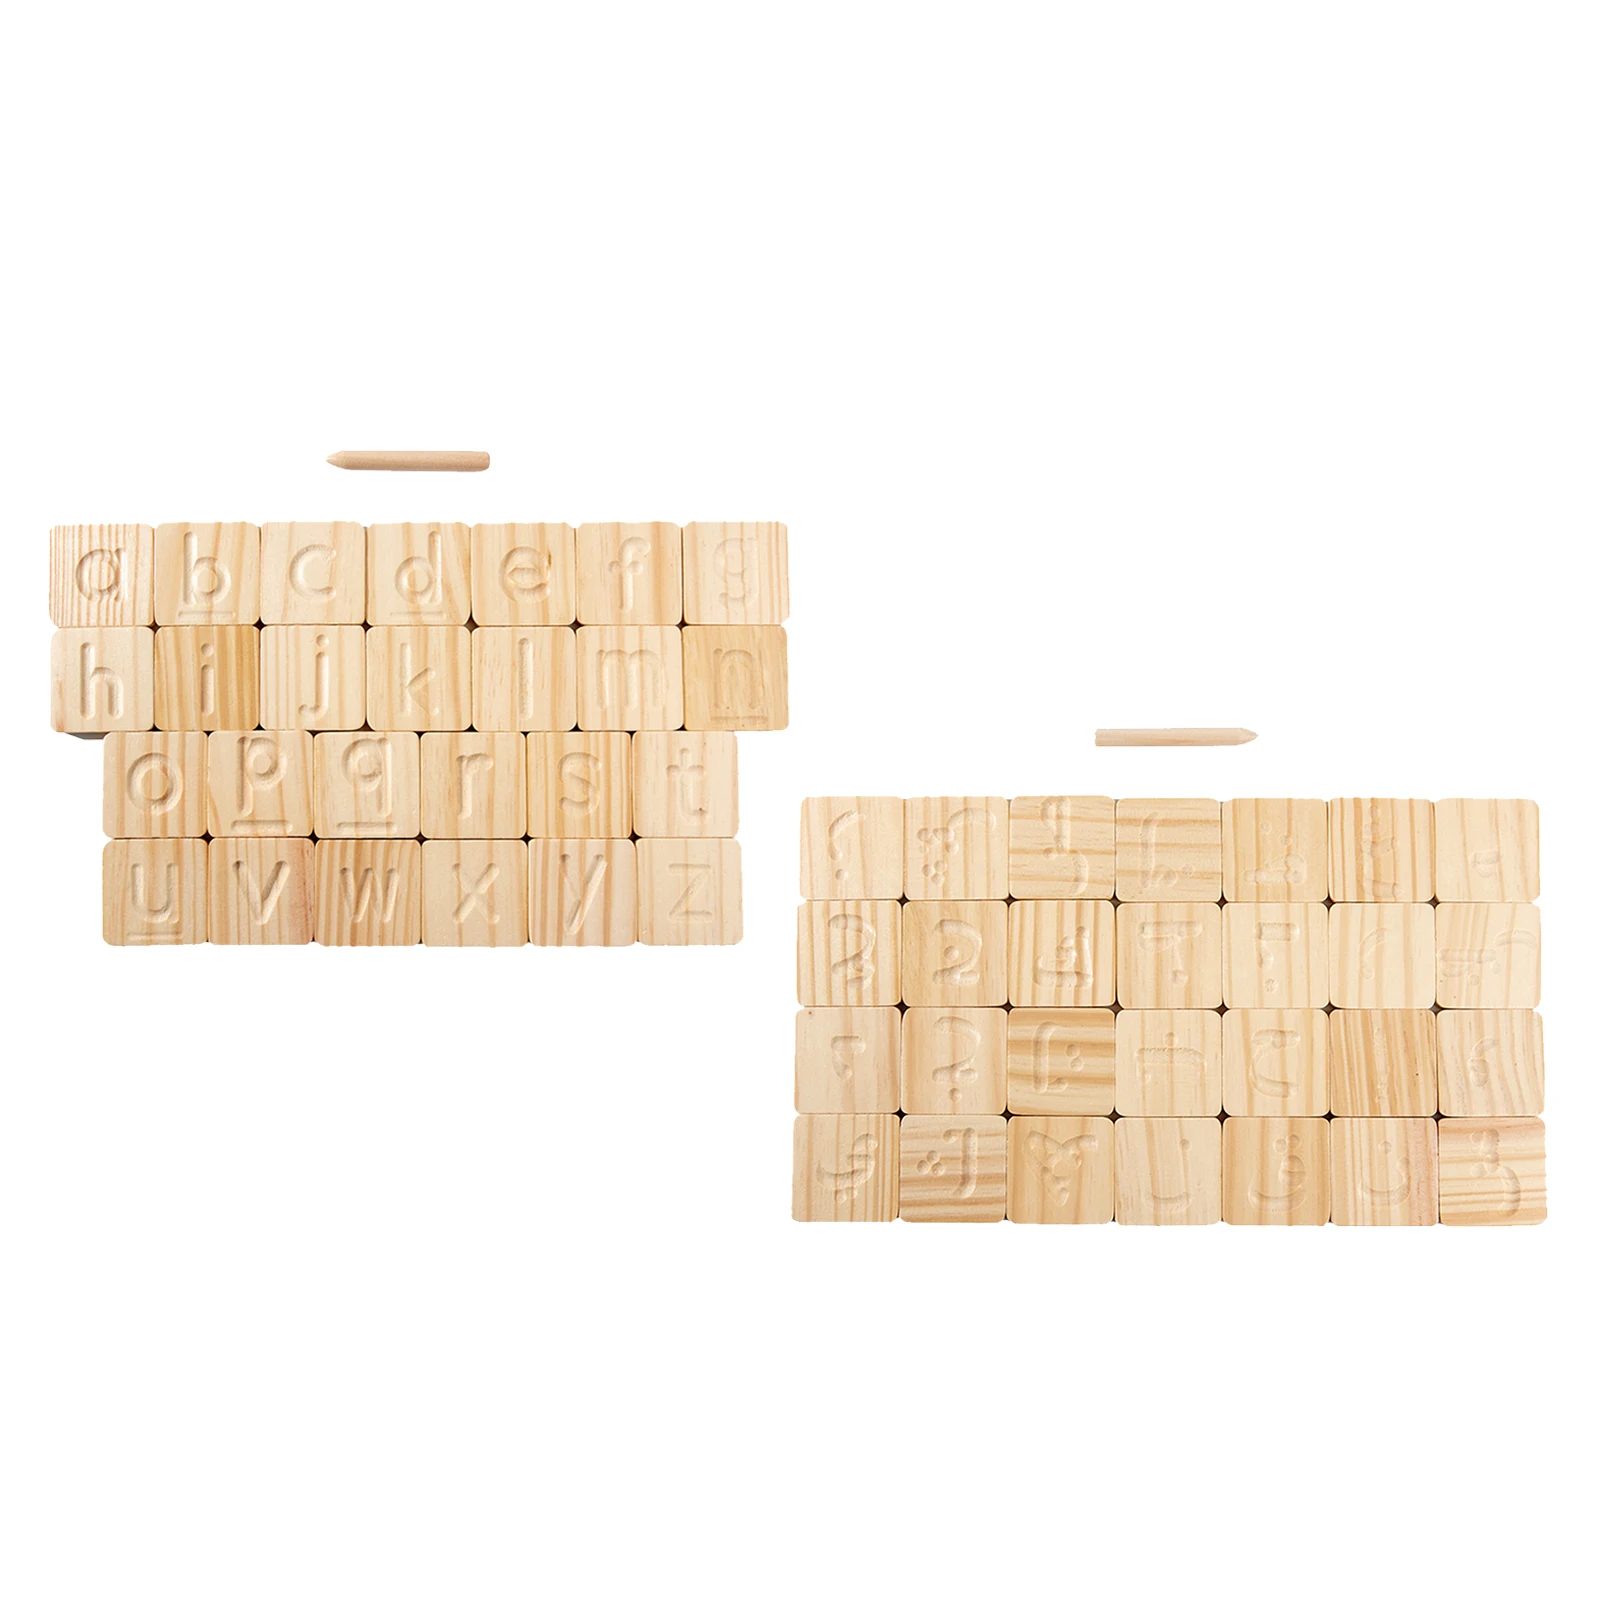 

Дети дошкольного возраста деревянная игрушка Монтессори игрушки доска с алфавитом с набор деревянных ручек для детей дошкольного возраста